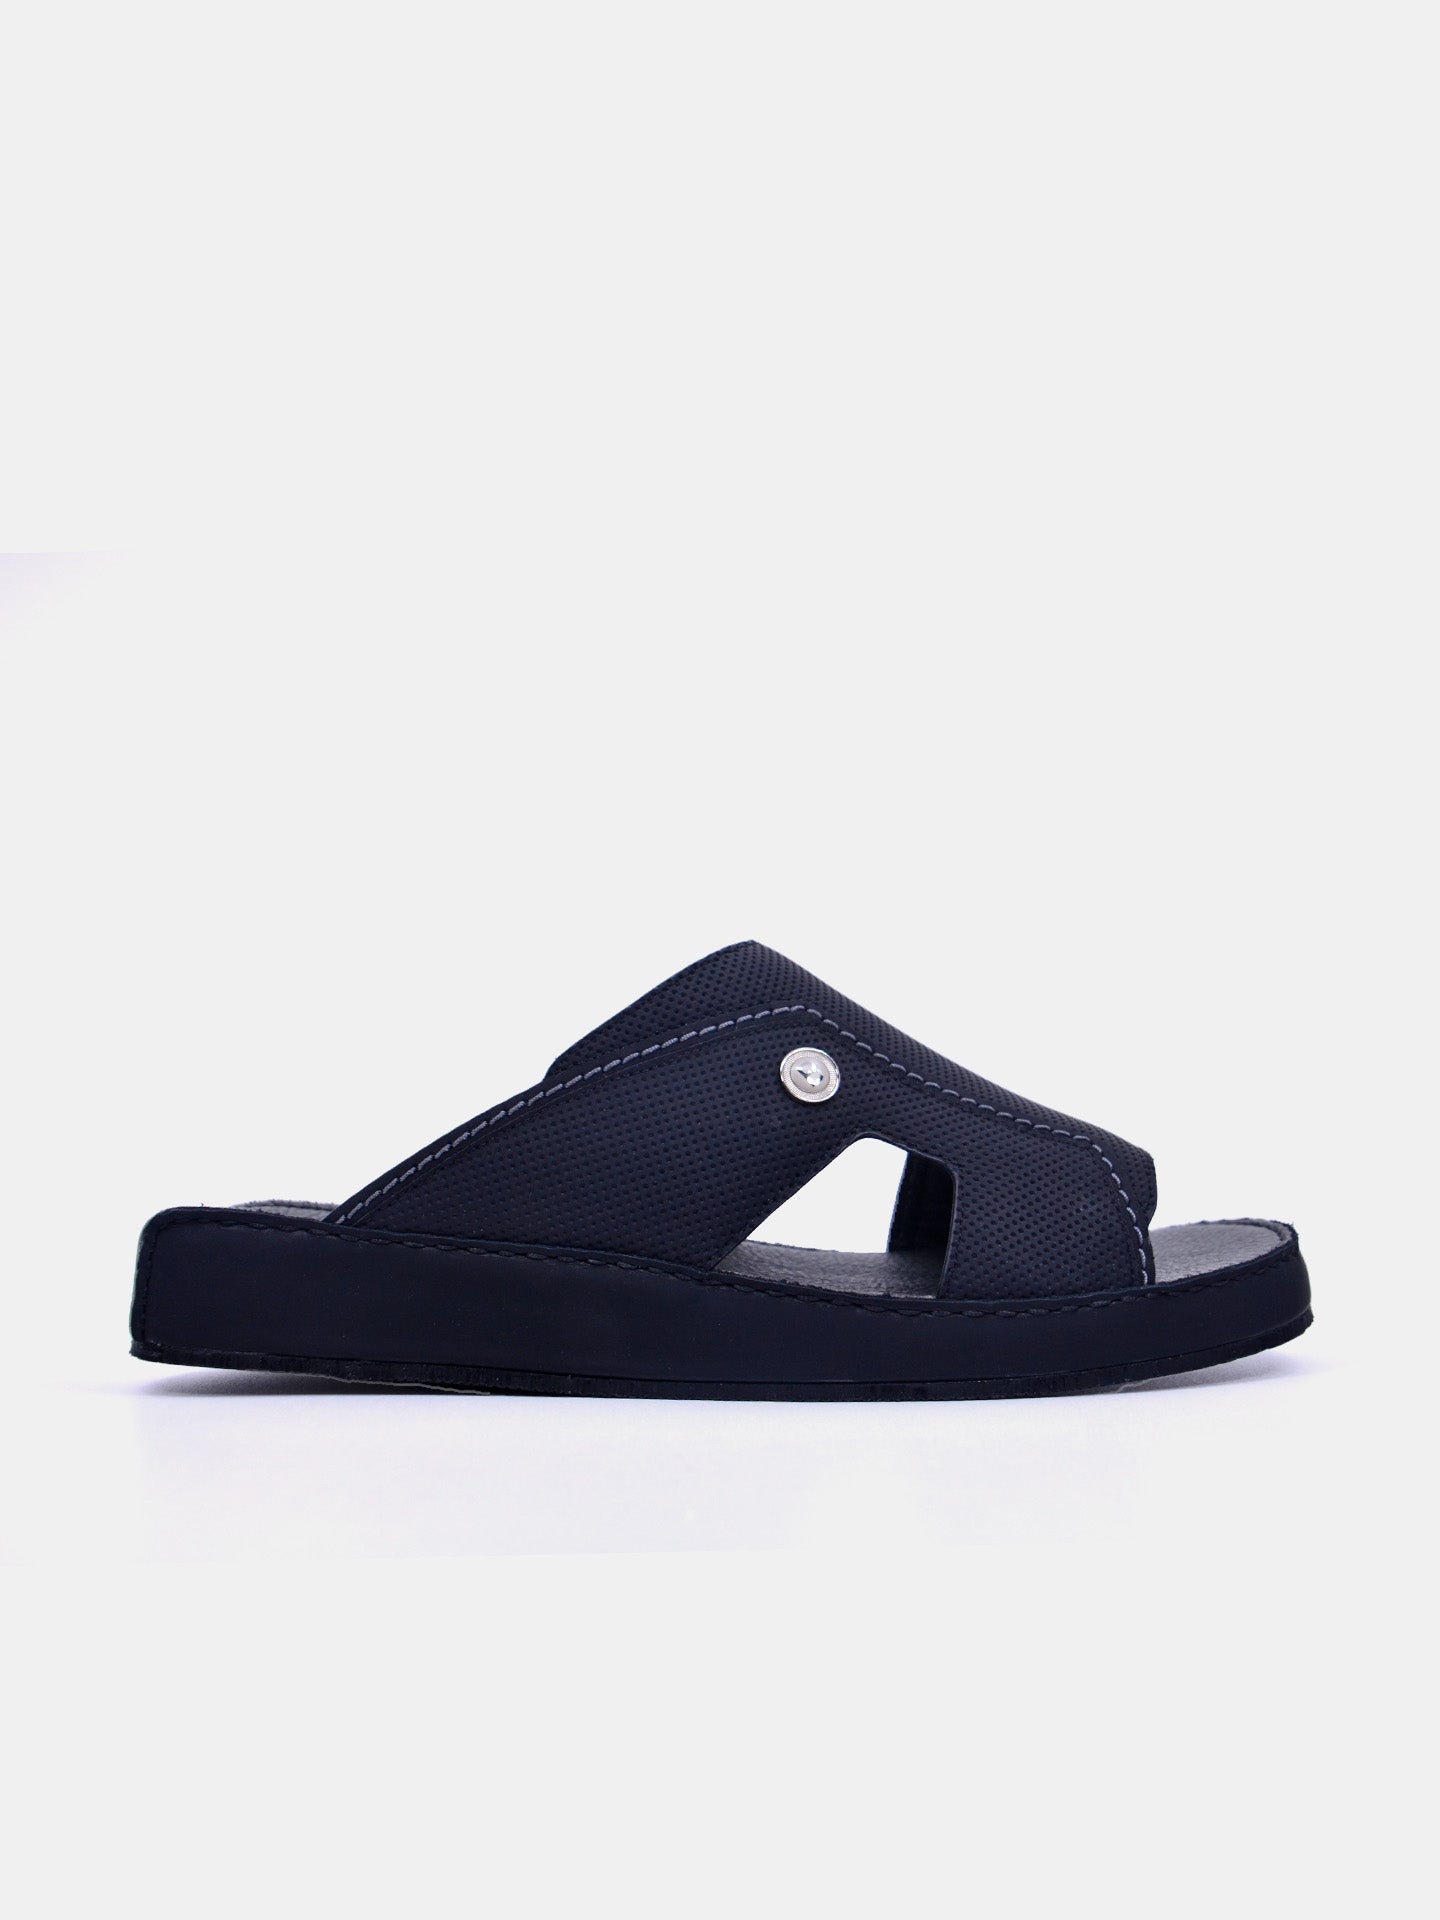 Barjeel Uno C357-21 Men's Arabic Sandals #color_Black